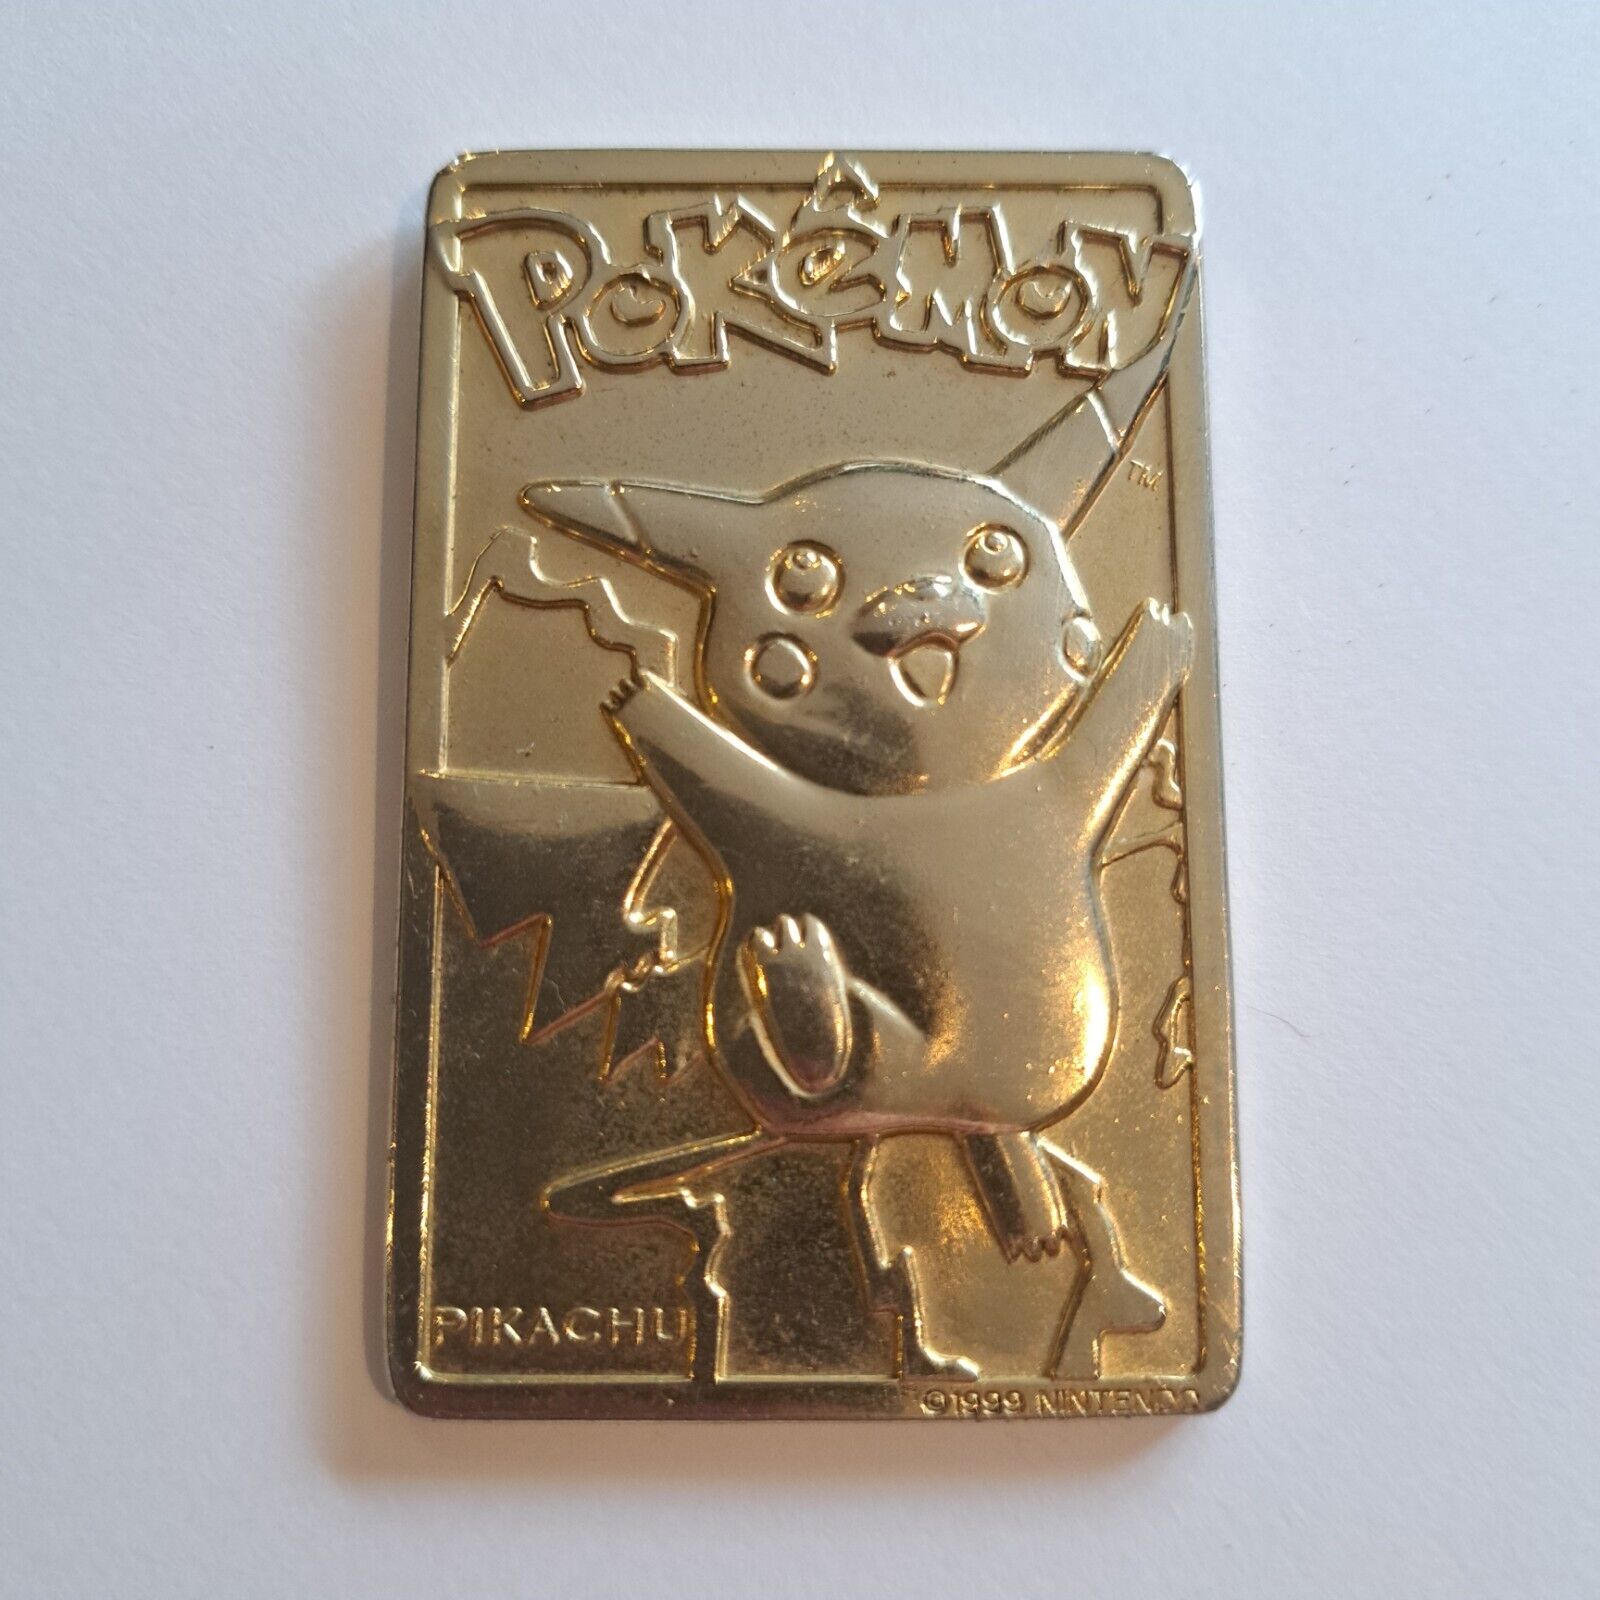 1999 Promo Pokémon Card - Pikachu - 23k Gold Plated - Vintage / Limited Edition